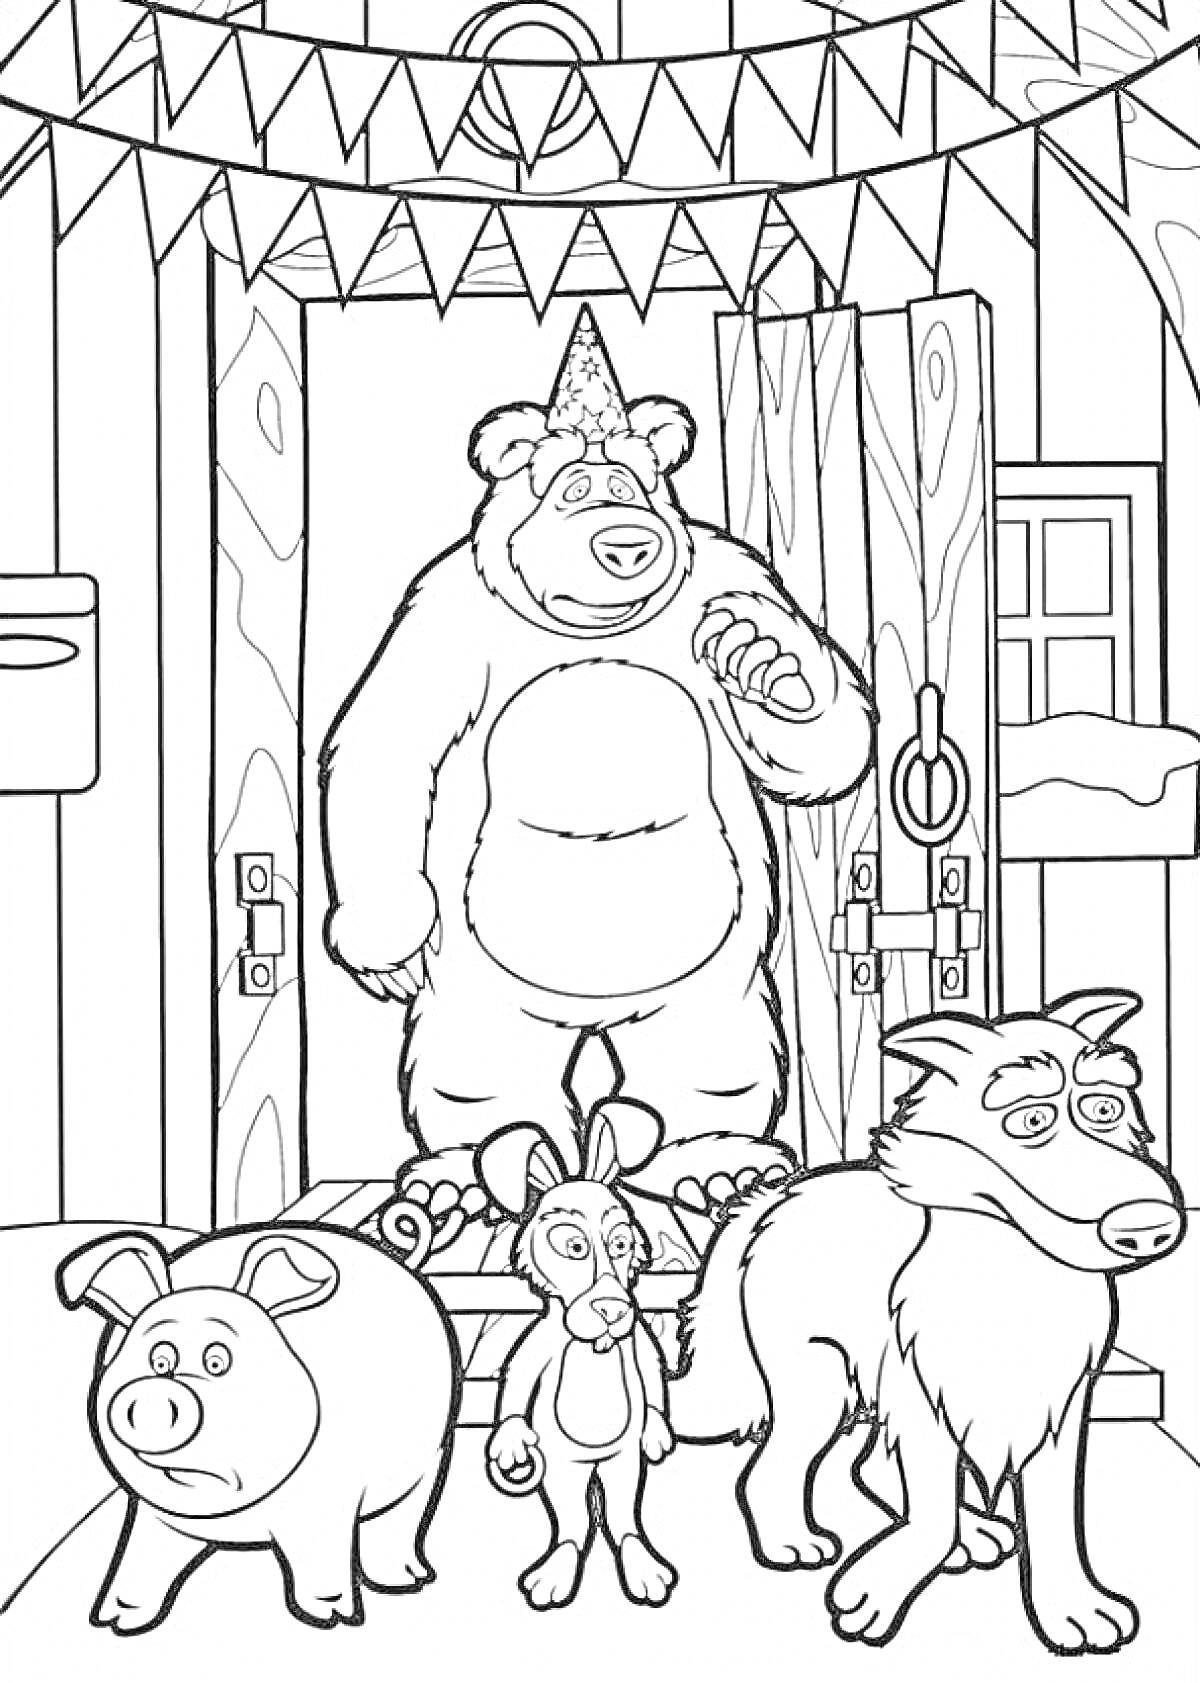 Раскраска Миша в шапке с помпоном стоит на пороге дома, рядом свинья, заяц и волк, праздник с флажками